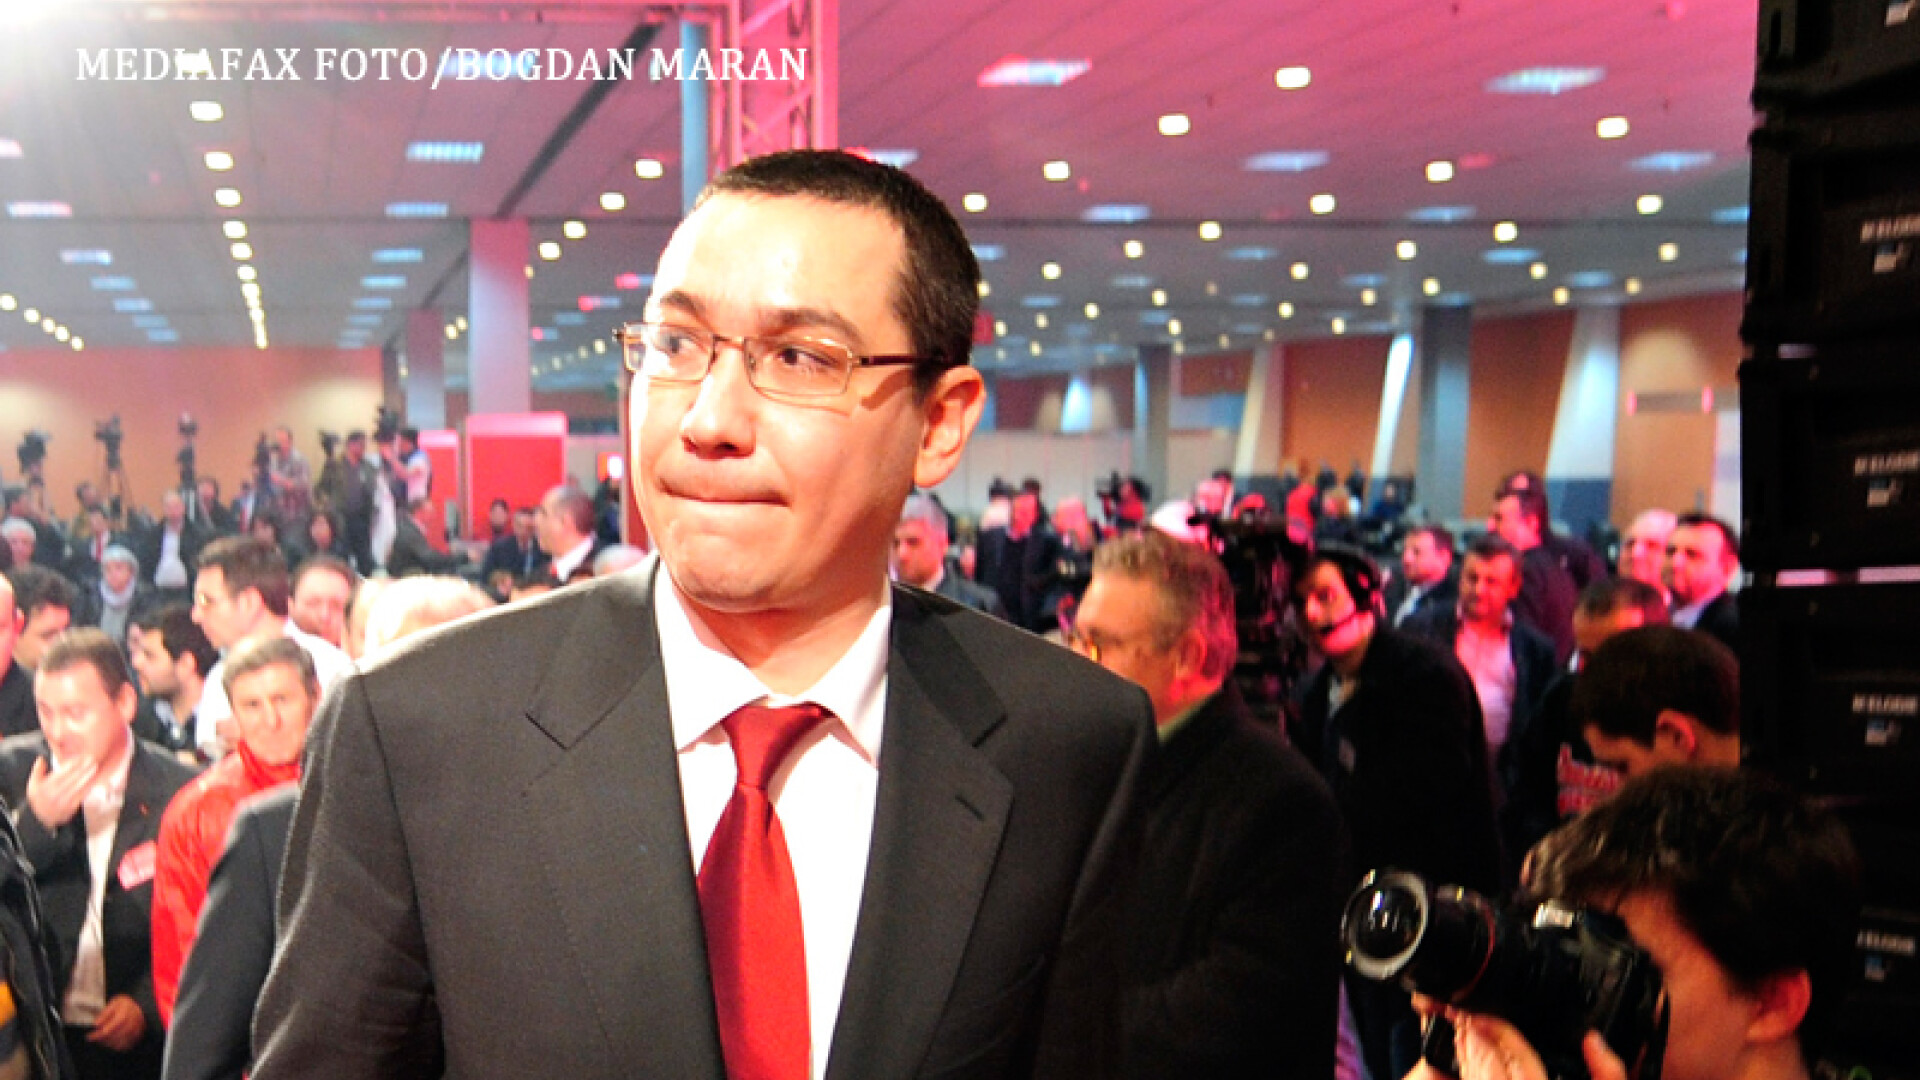 Victor Ponta isi musca buza de jos un reporter ii face poza